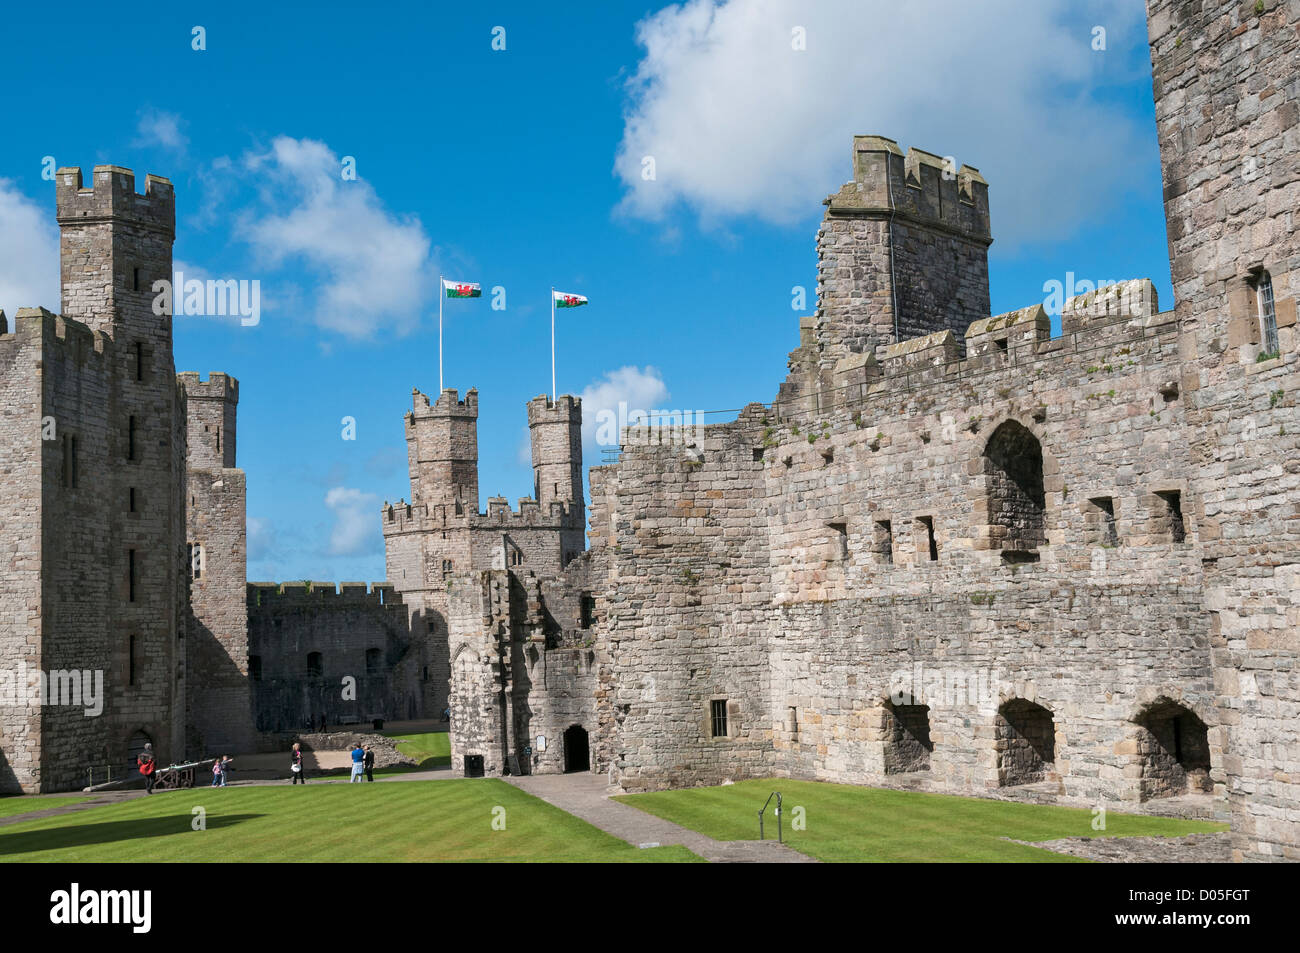 Wales, County Gwynedd, Caernarfon Castle, Welsh flags atop Eagle Tower Stock Photo